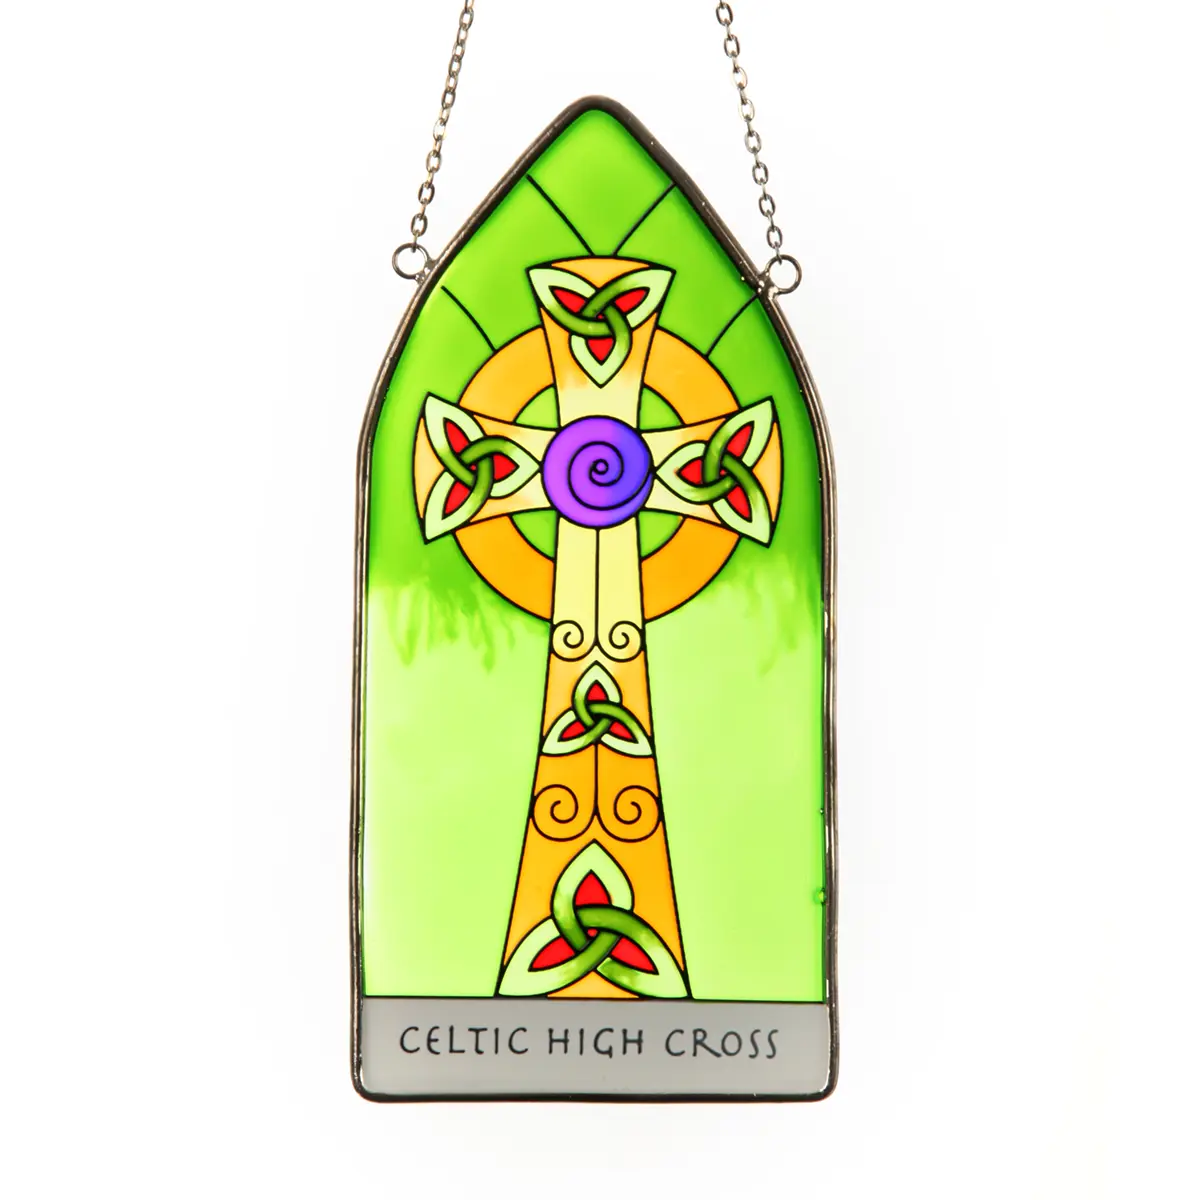 Celtic High Cross - Keltisches Kreuz aus Irland als Fensterbild aus Buntglas